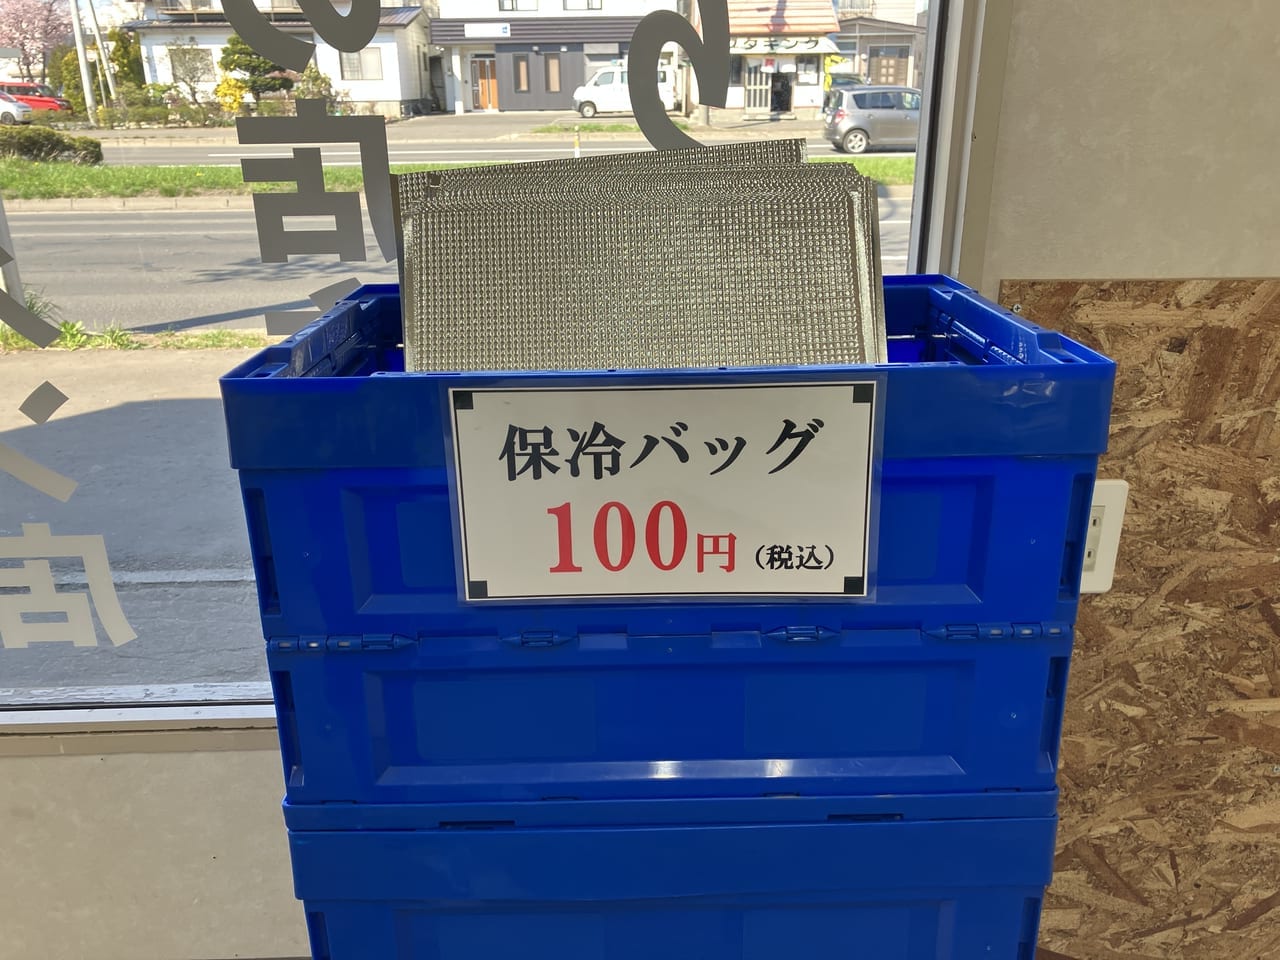 環状通沿いの北海道餃子研究所で24時間無人直売餃子販売中